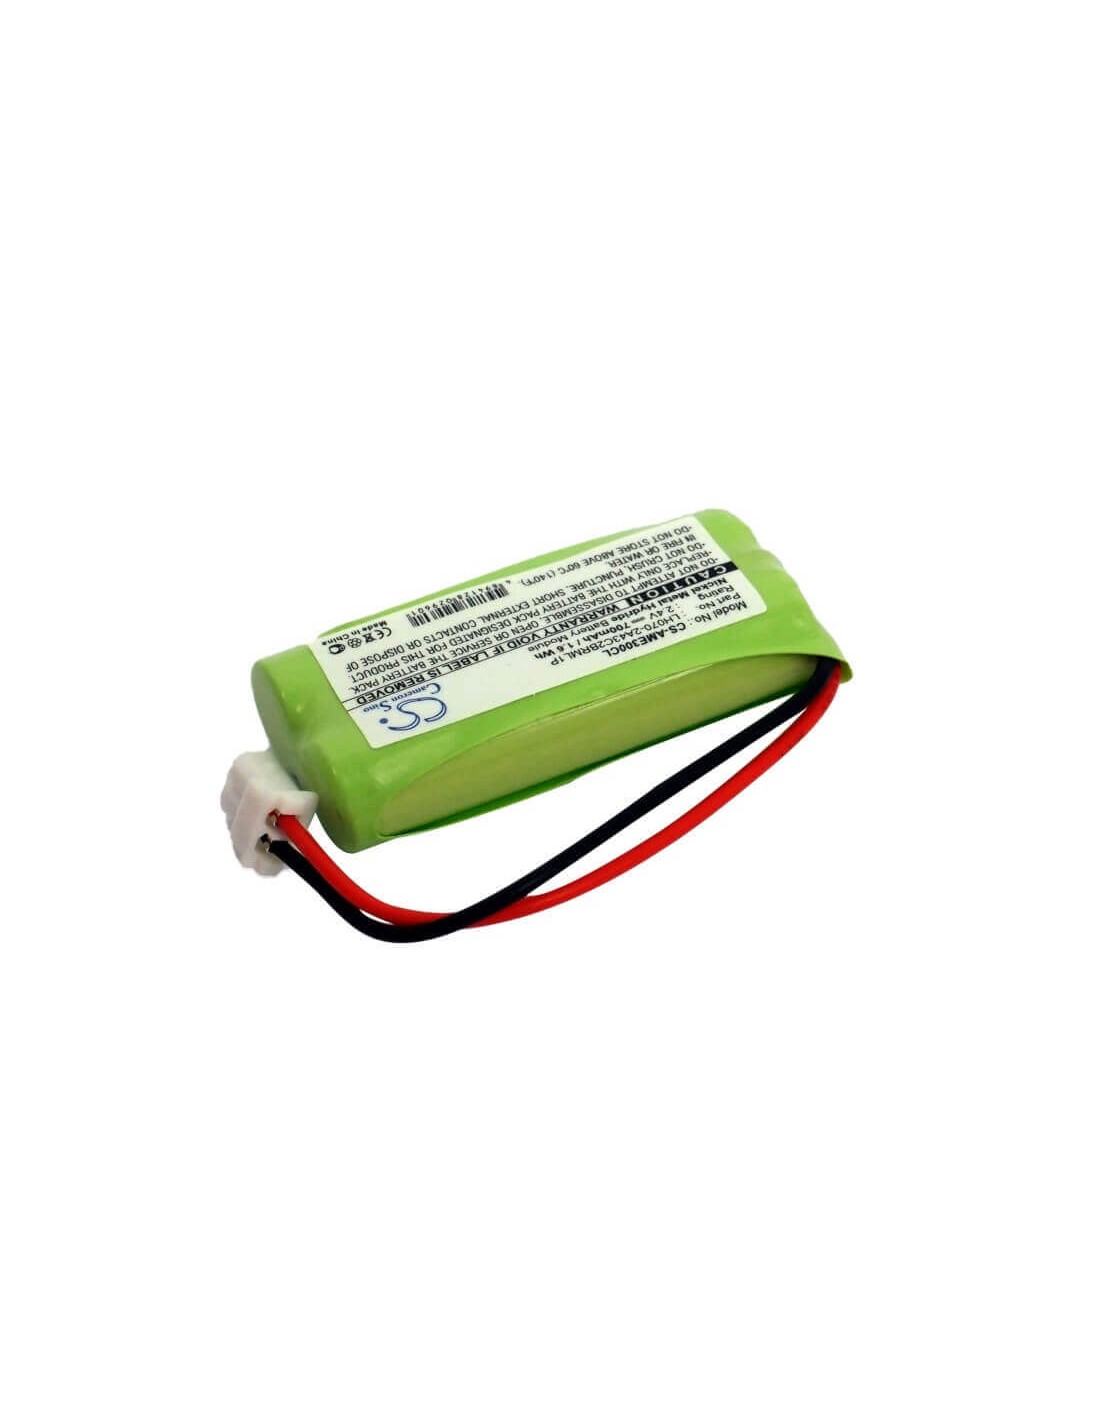 Battery for V Tech, 6001, 6105, 6185, 2.4V, 700mAh - 1.68Wh